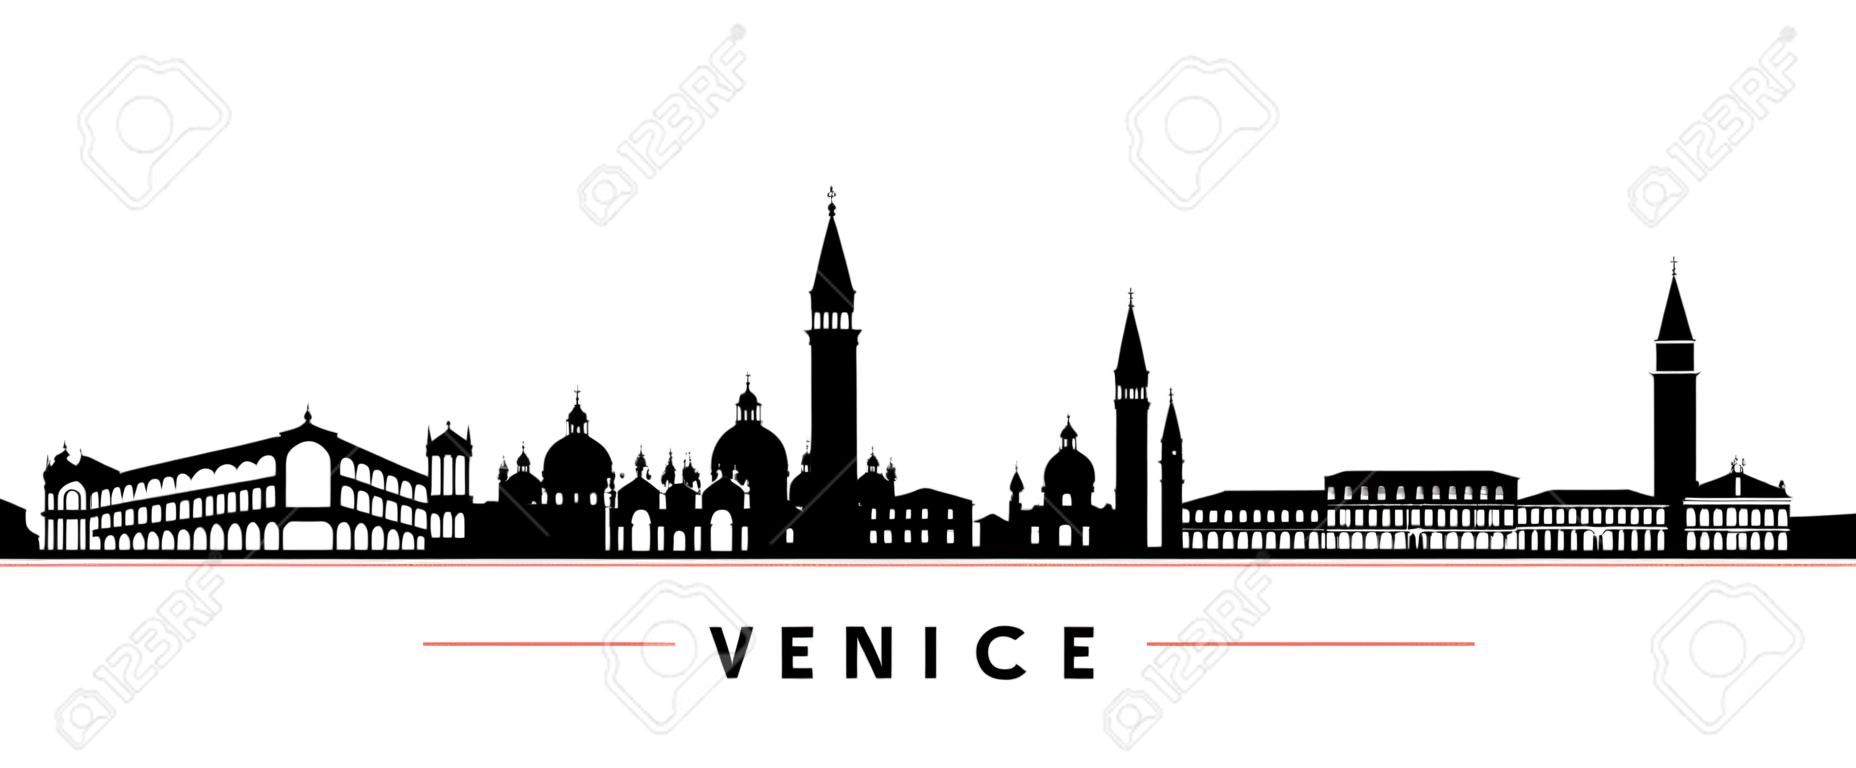 Bannière horizontale de Venise skyline. Silhouette noire et blanche de la ville de Venise, Italie. Modèle vectoriel pour votre conception.